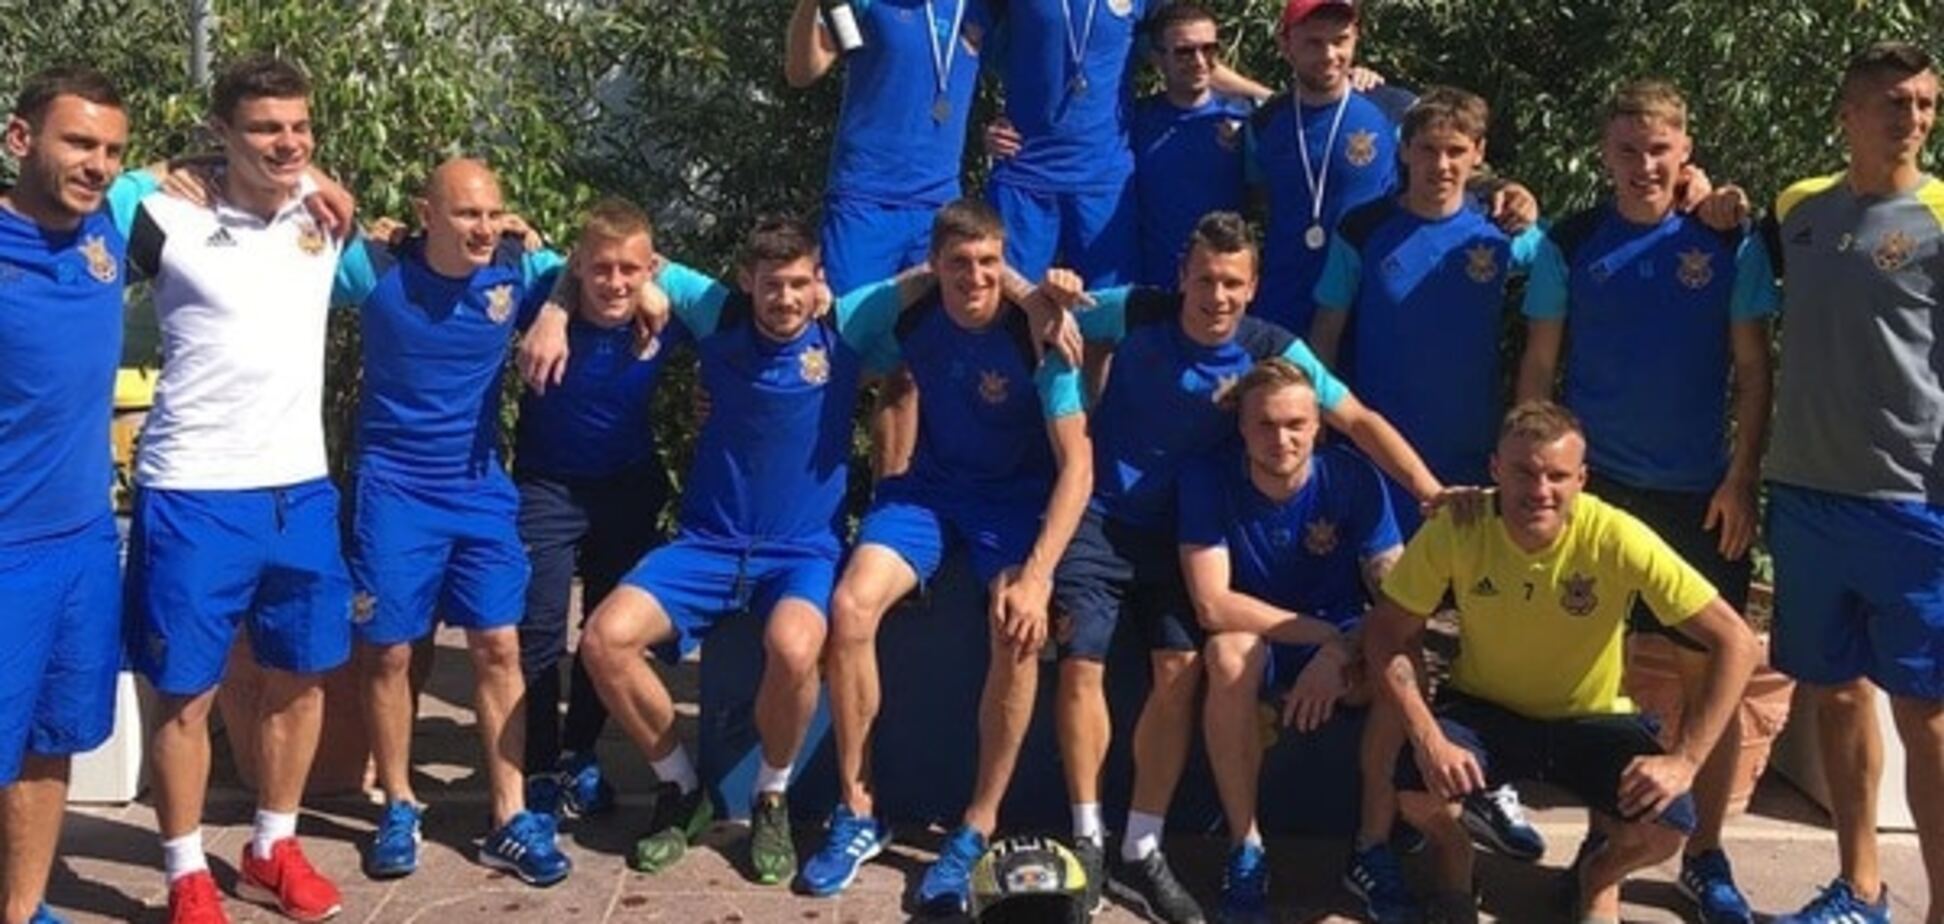 Евро-2016 Украина